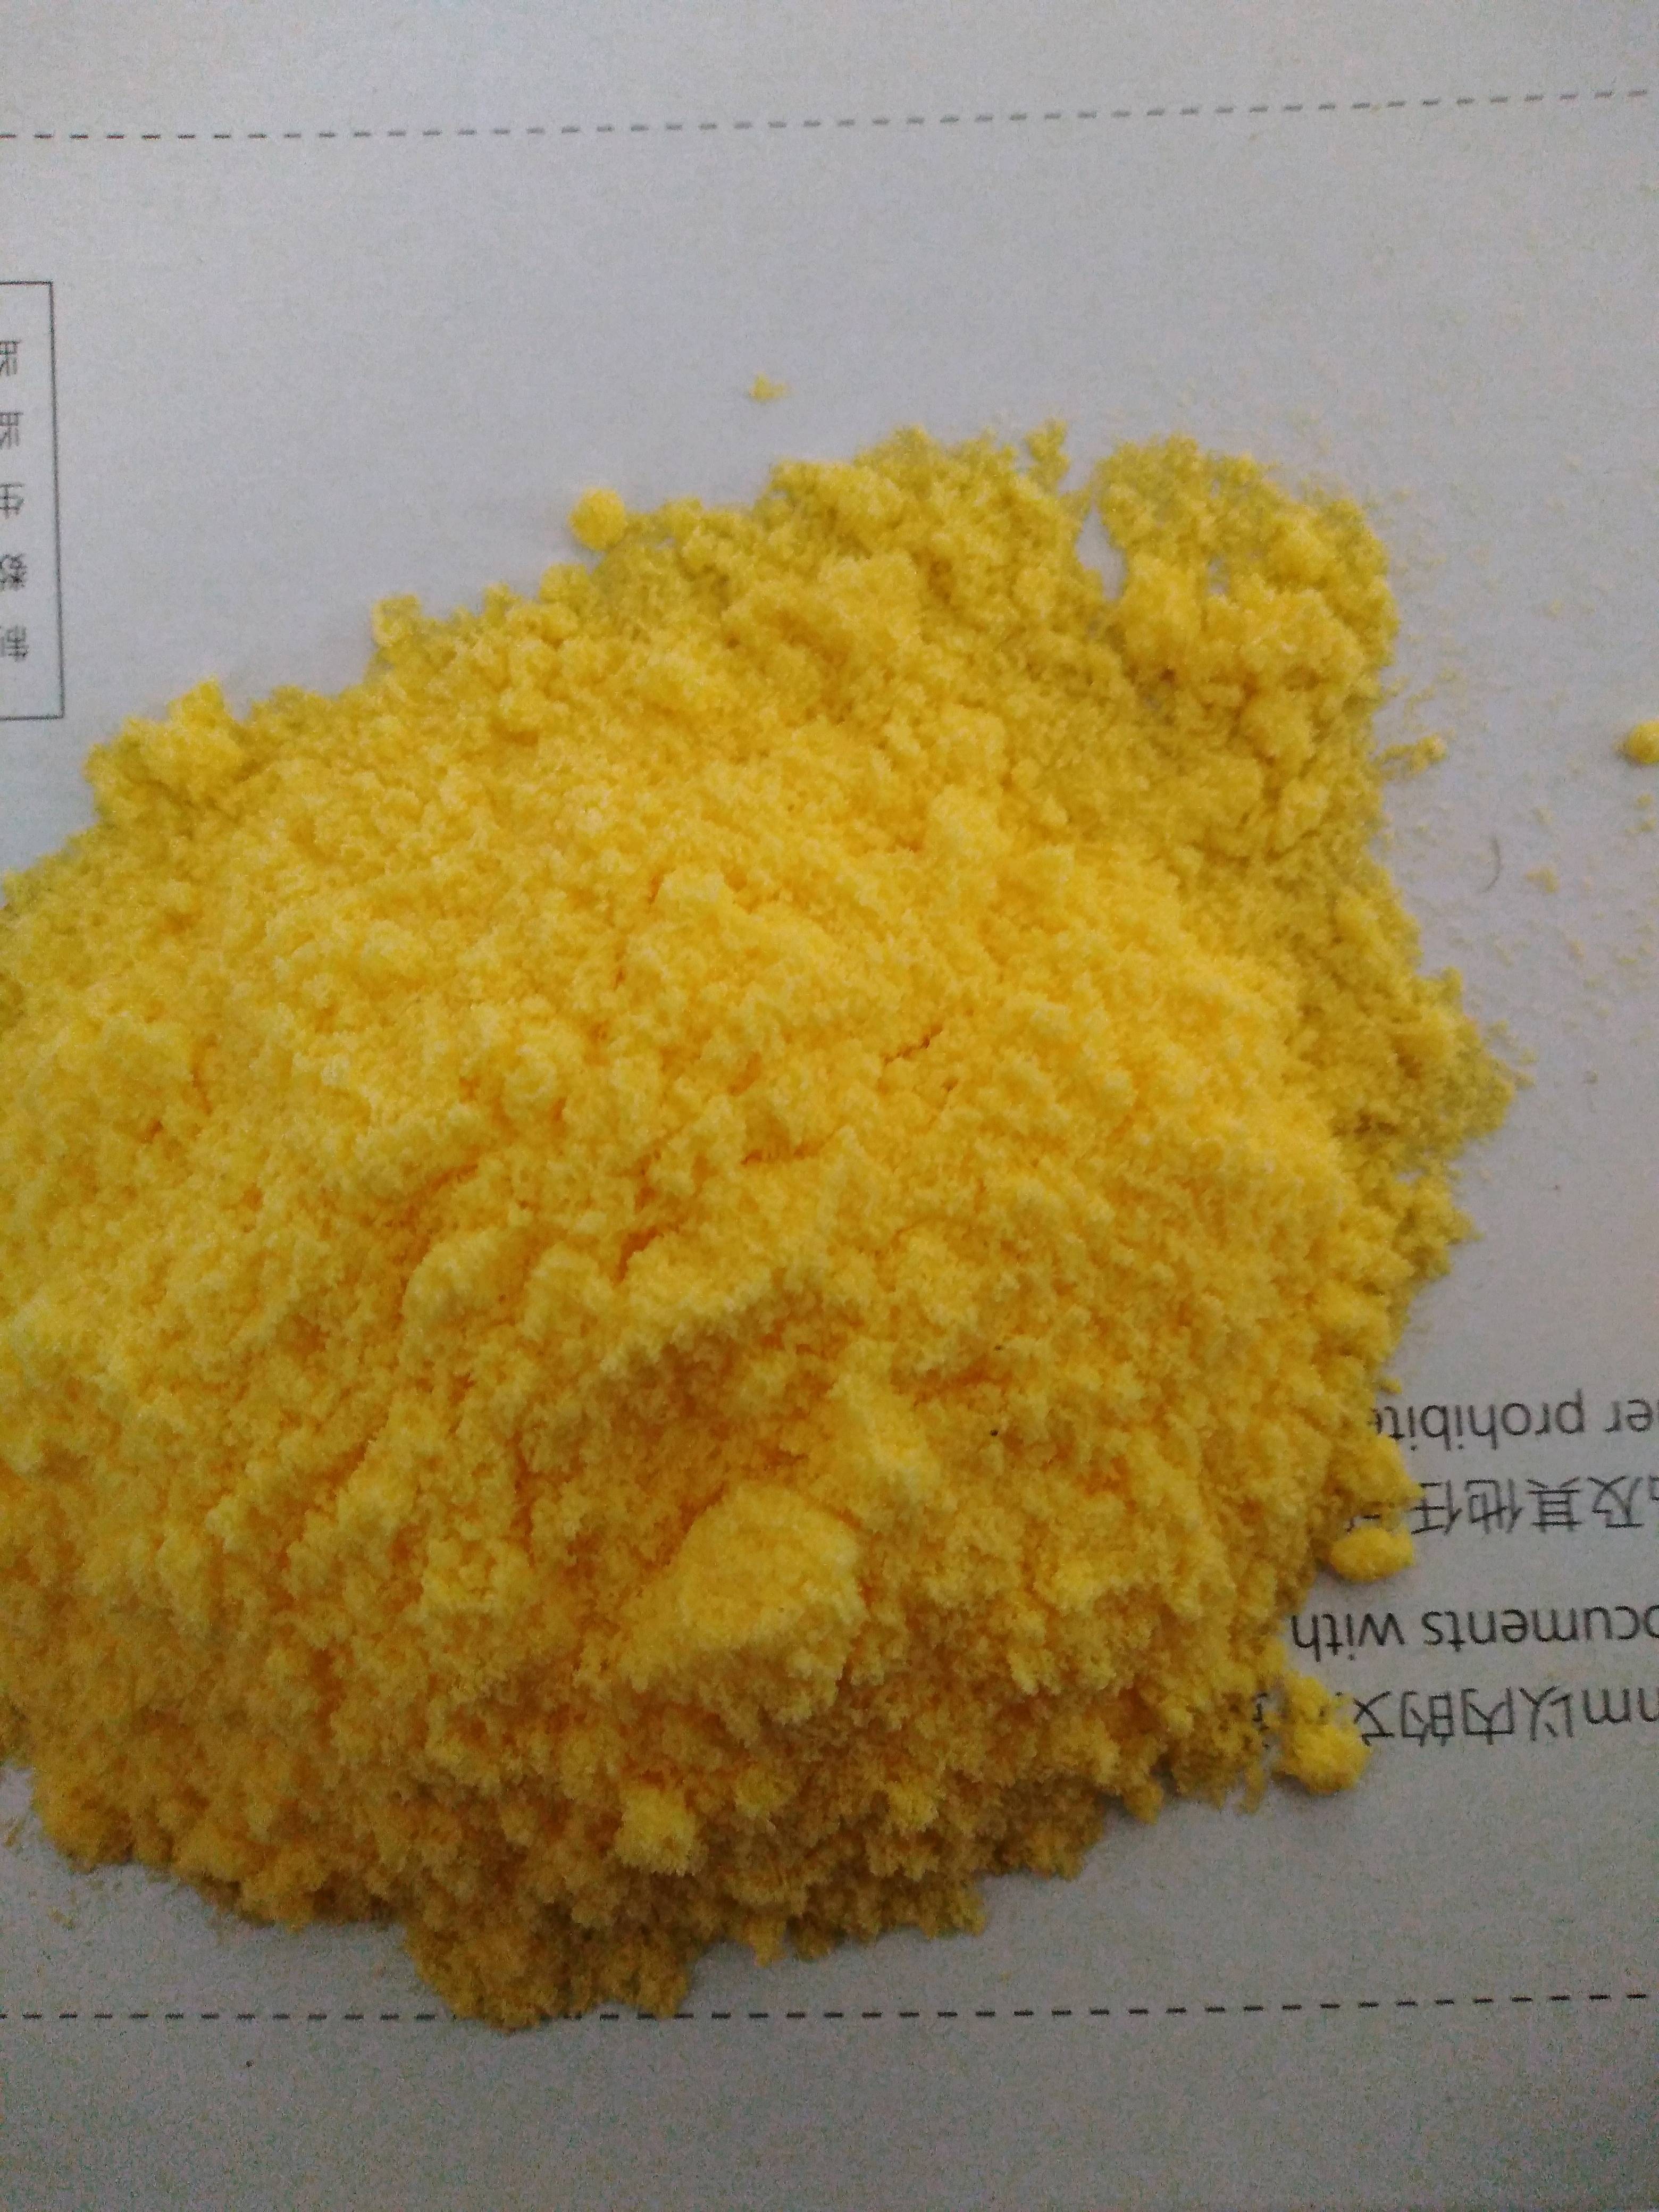 大豆磷脂粉是有大豆磷脂油膨化玉米组合而成，脂肪48，磷脂...